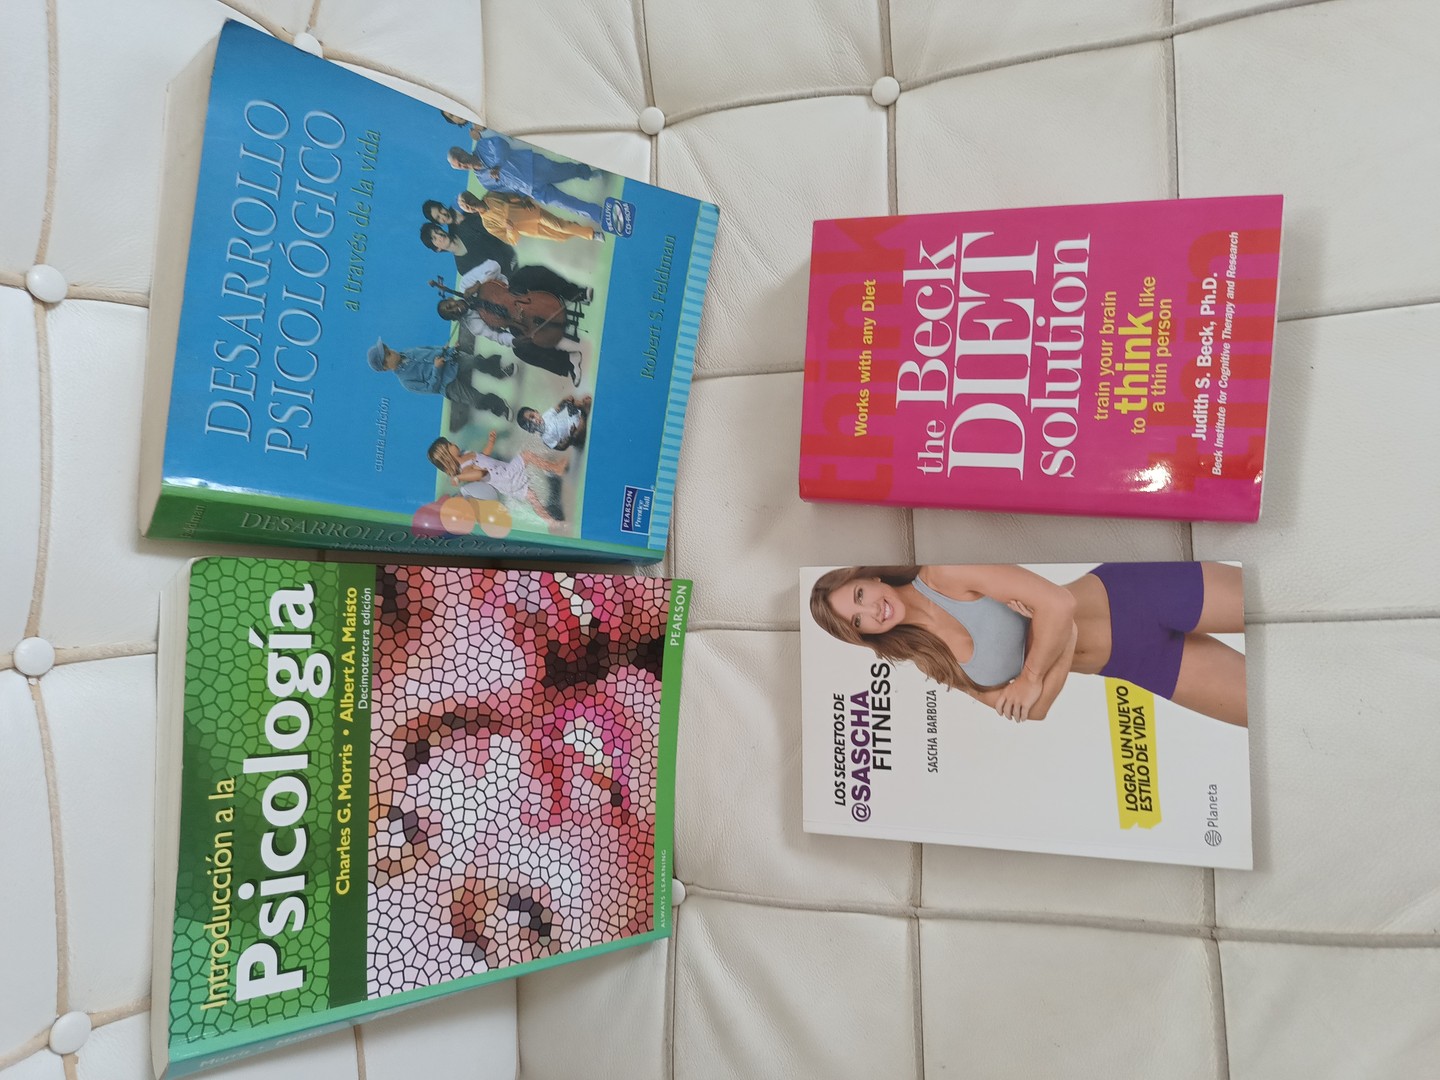 libros y revistas - Libros de Psicología, novelas, historia  2